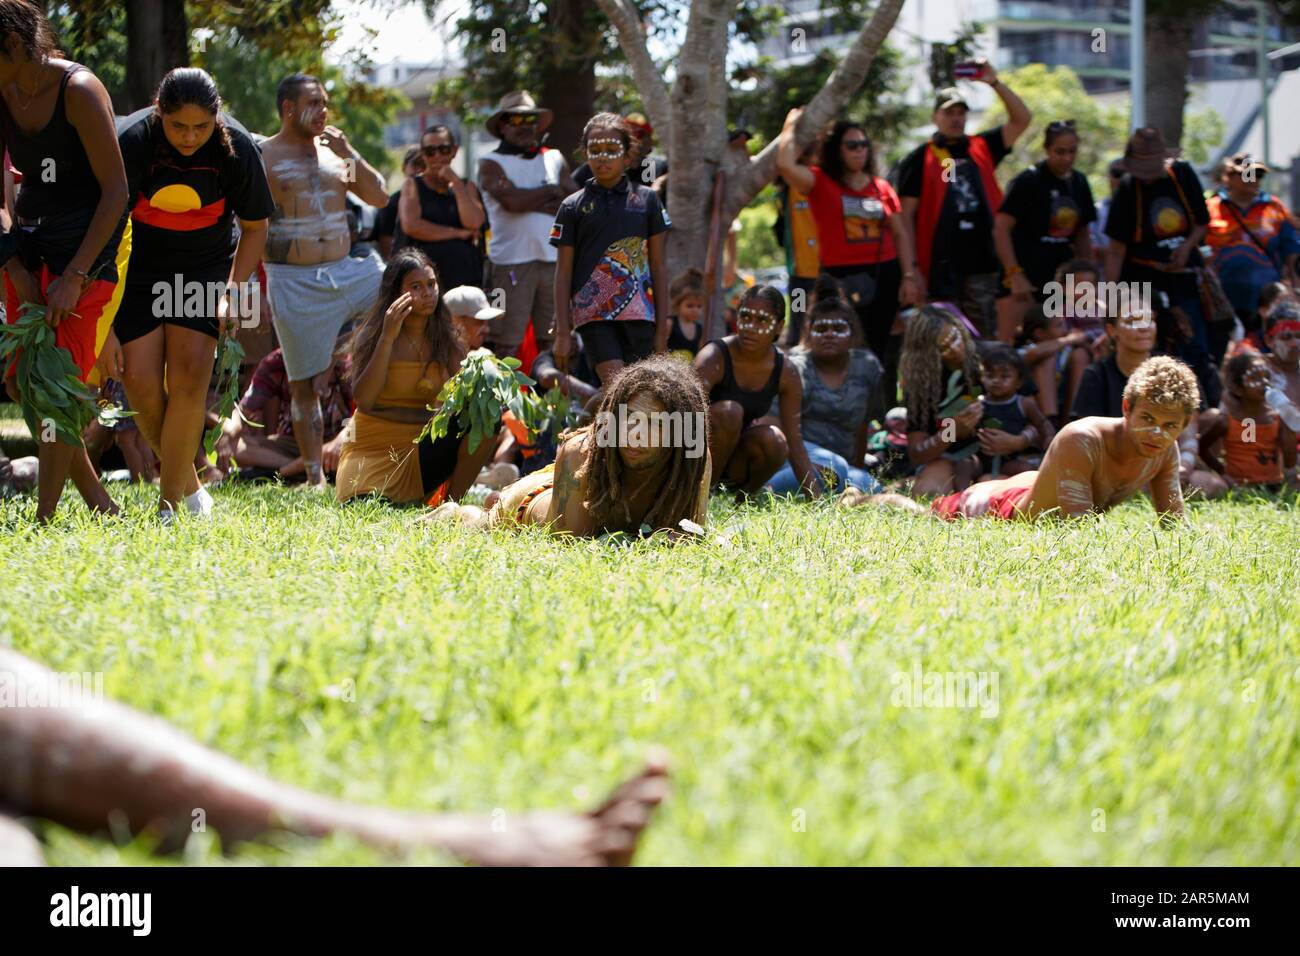 Los manifestantes realizan una danza tradicional en Musgrave Park durante el rallye.el pueblo indígena Yuggera y Turrbal organizaron un rallye conocido como Meanjin en una fecha que es sinónimo del comienzo del gobierno colonial británico y la opresión de los aborígenes. Otros temas discutidos en la manifestación incluyeron la lucha contra la injusticia y el recuerdo de Las Generaciones Robadas y la soberanía aborigen. Foto de stock